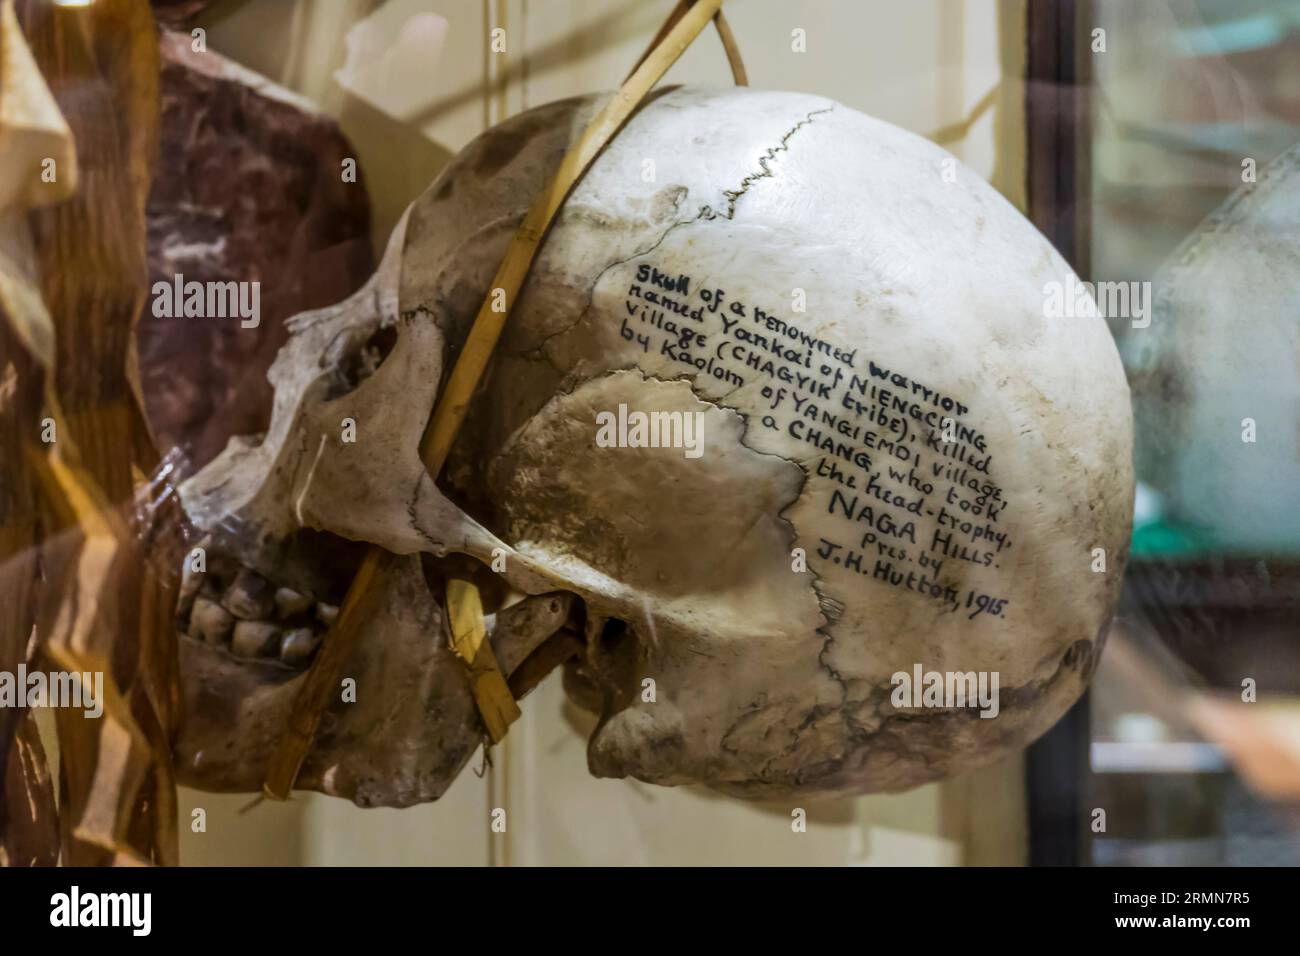 Tête de trophée avec détails d'accession écrits sur le côté du crâne. Yankai un guerrier renommé des collines Naga de l'Assam. Pitt Rivers Museum, Oxford. Banque D'Images